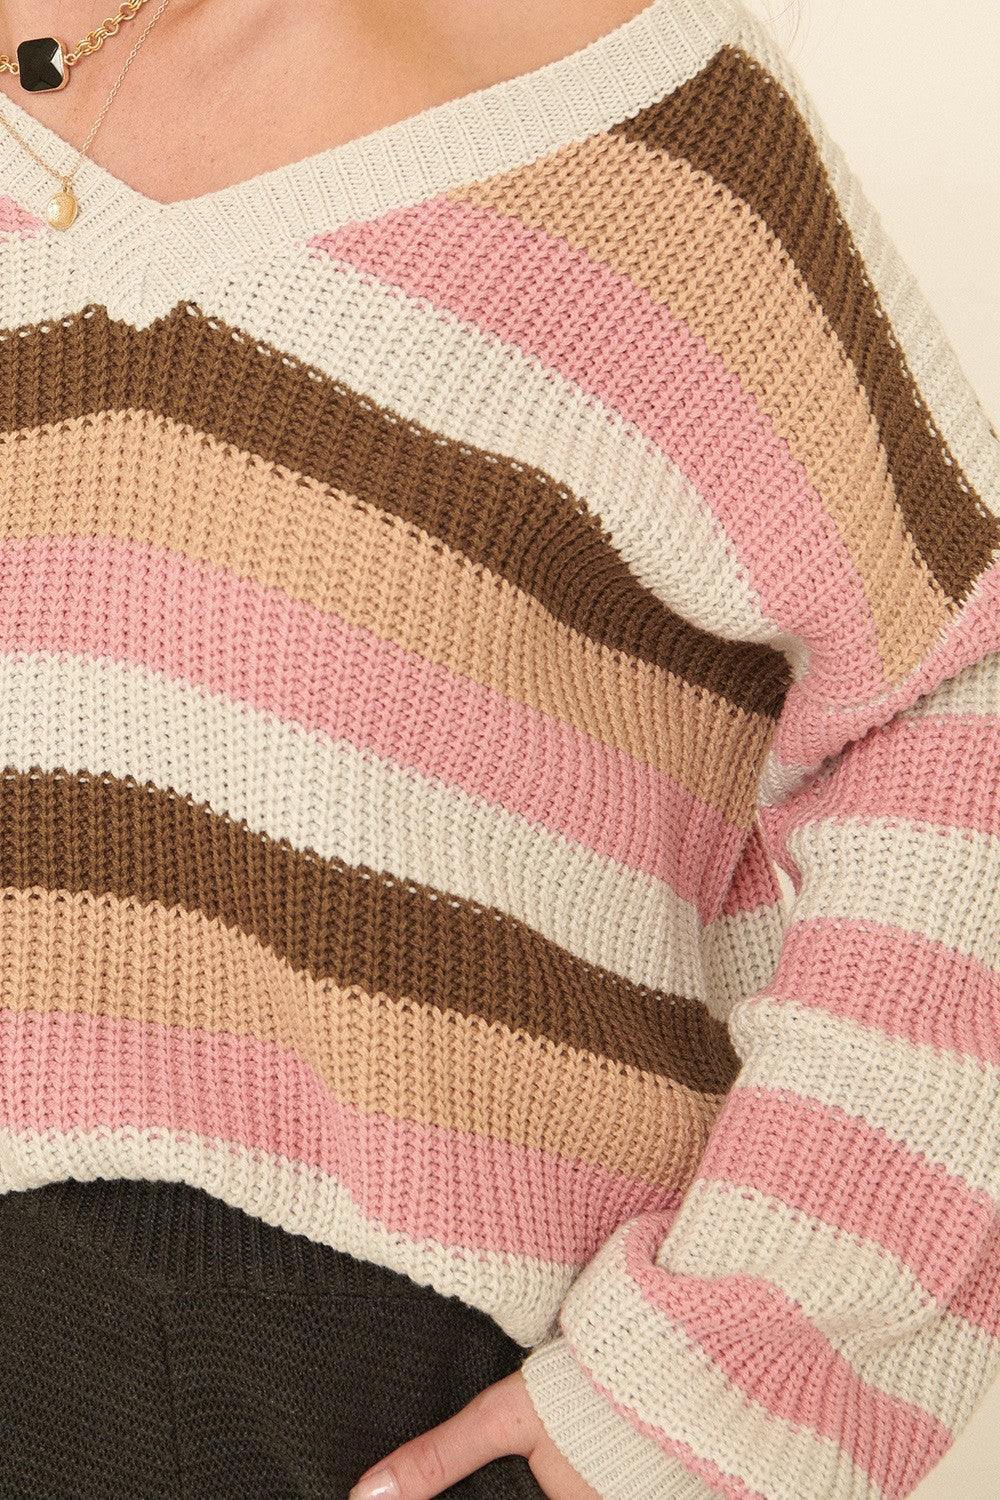 Stacked Sweater - Blush Mix